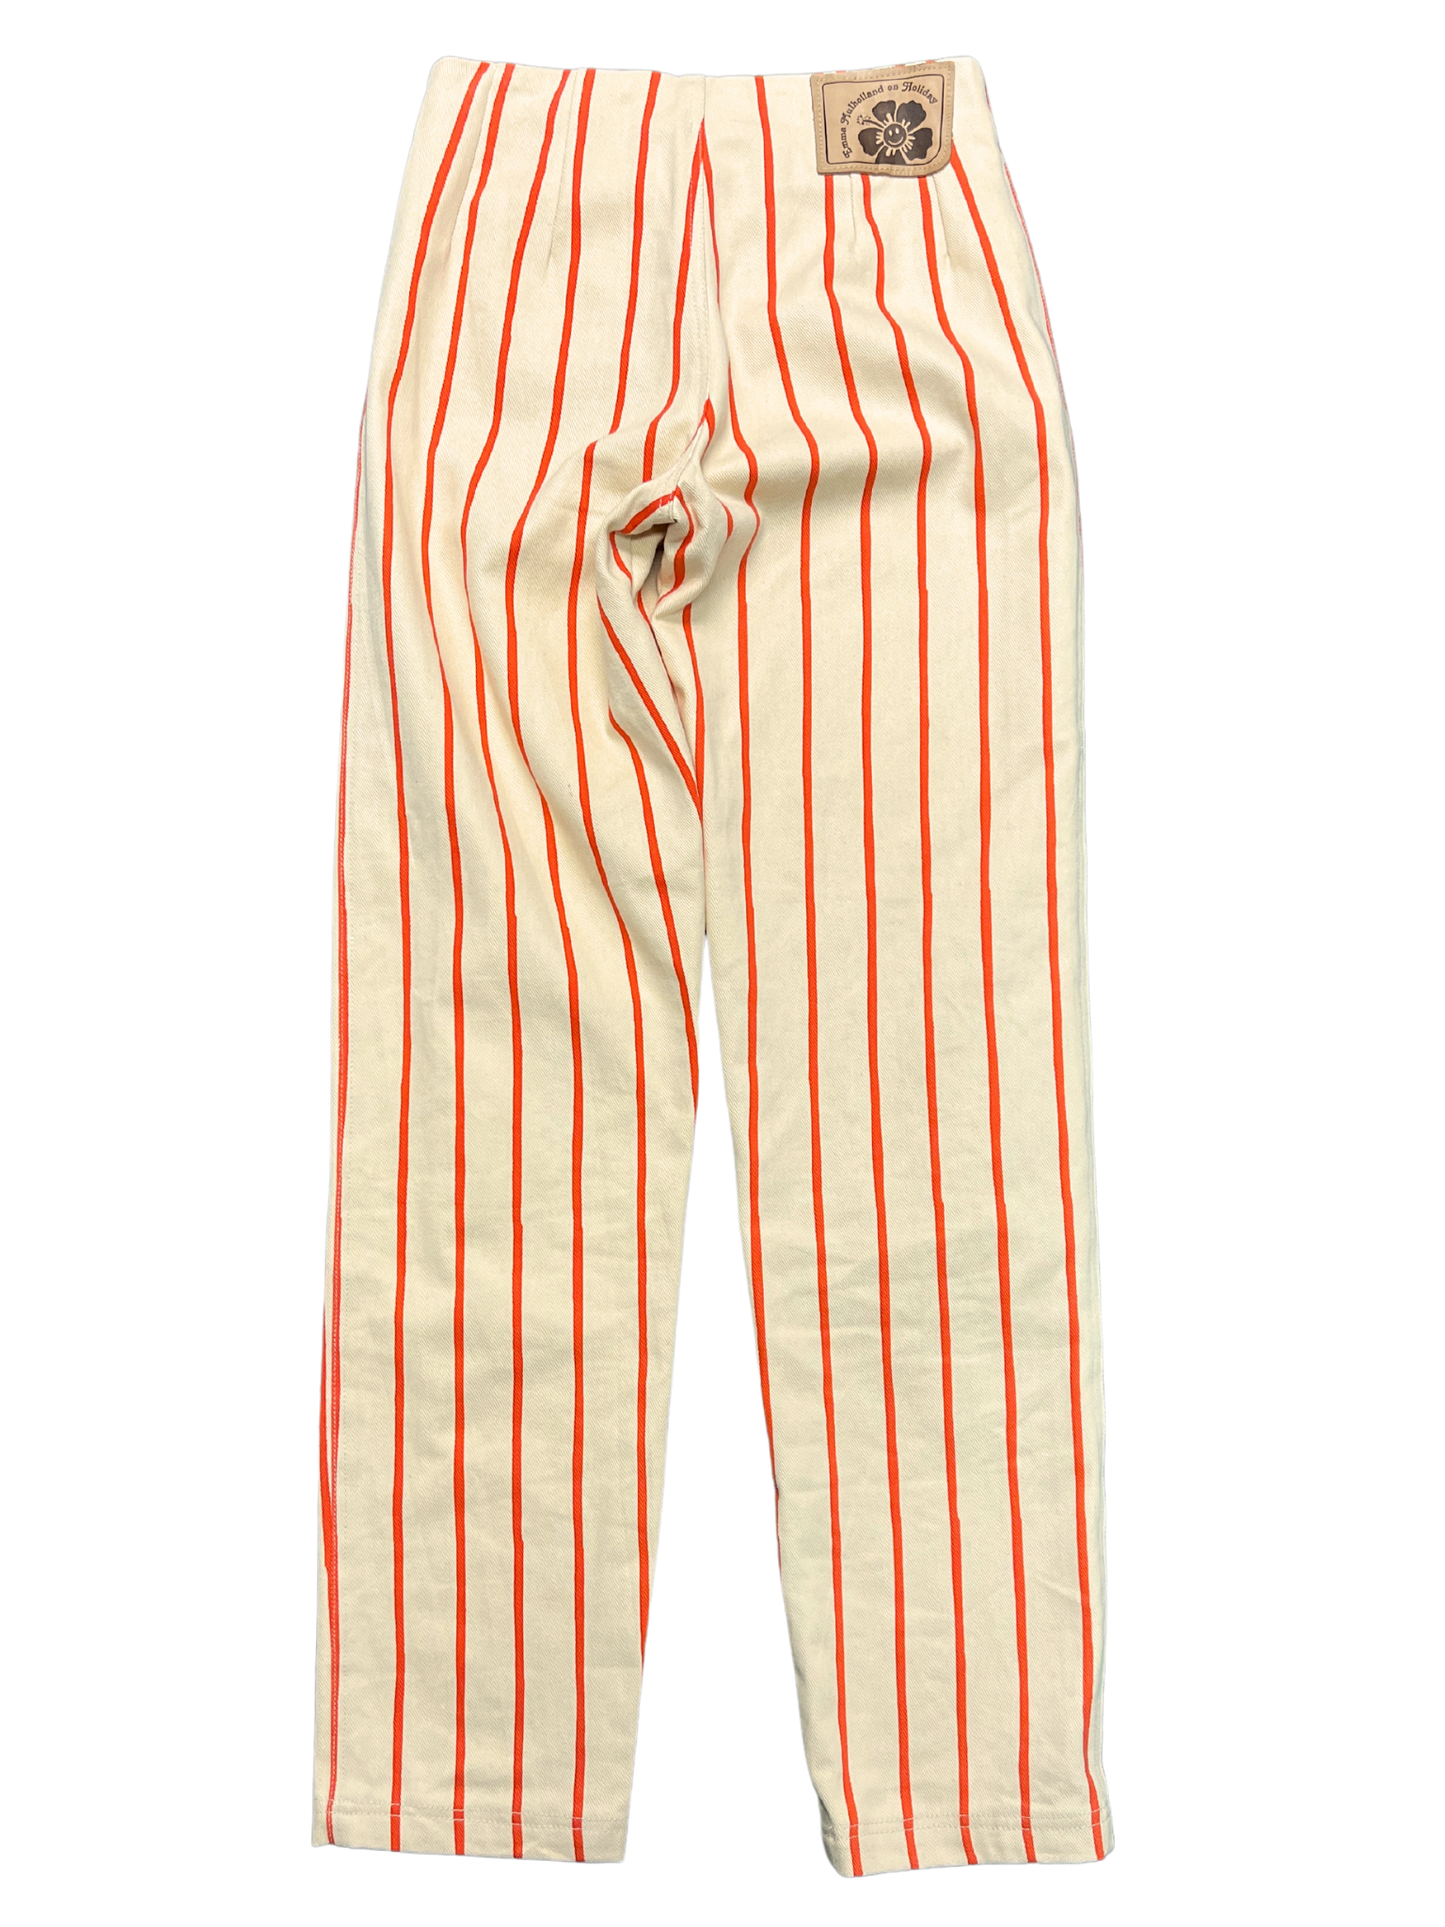 Size XXS - Emma Mulholland on Holiday Thin Stripe Kokomo Pants